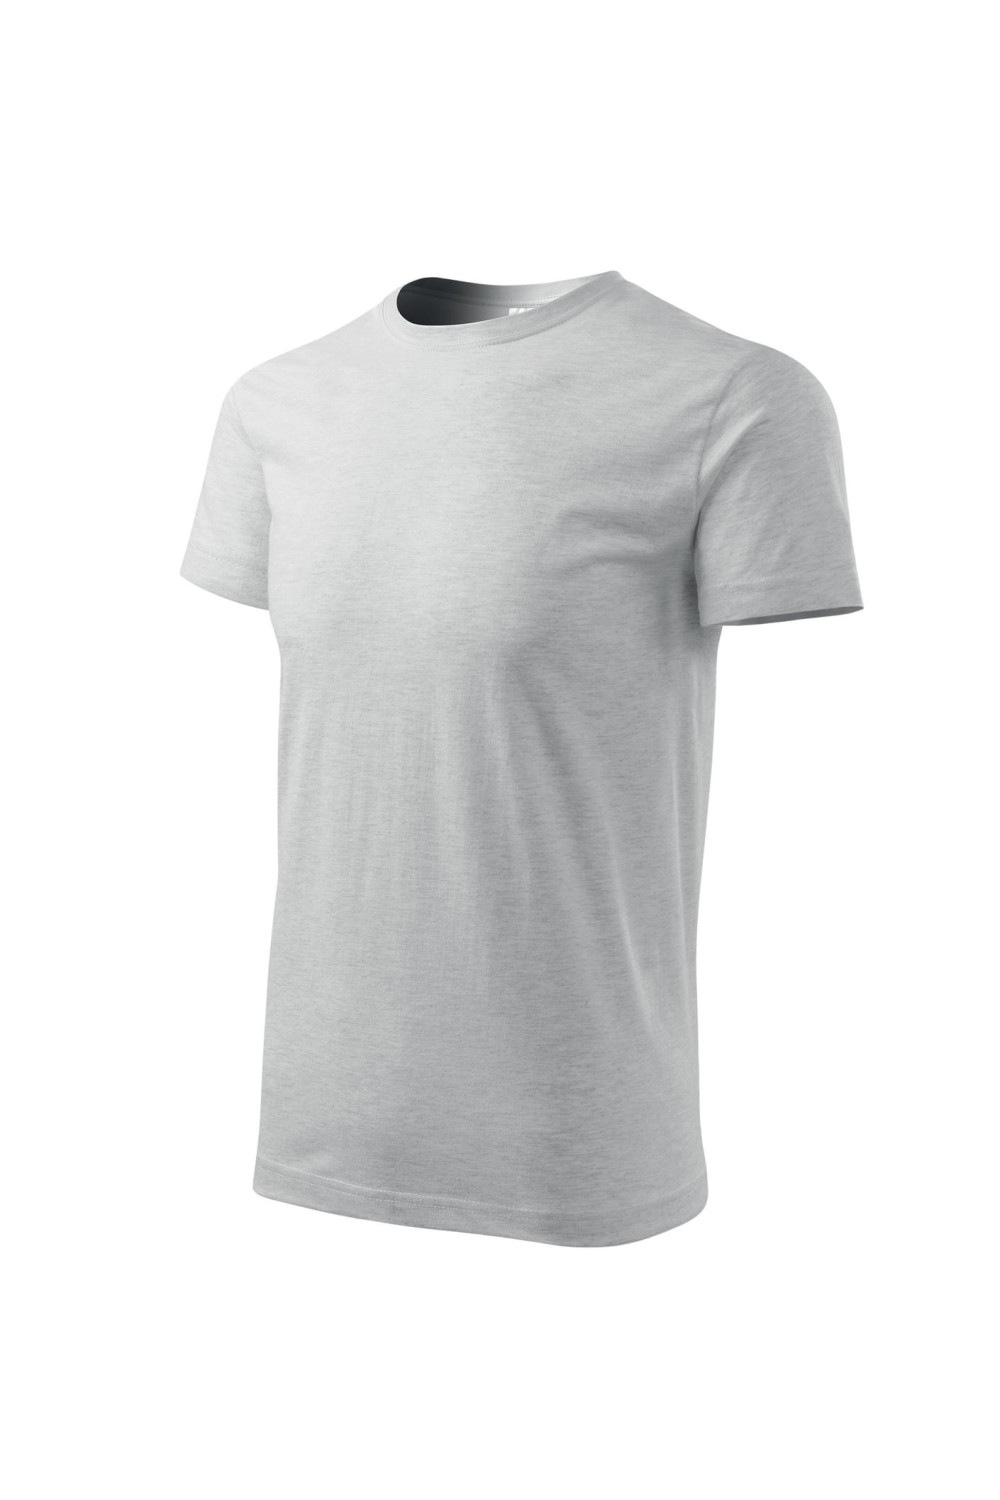 Koszulka męska 100% bawełna BASIC 129  kolor jasnoszary melanż